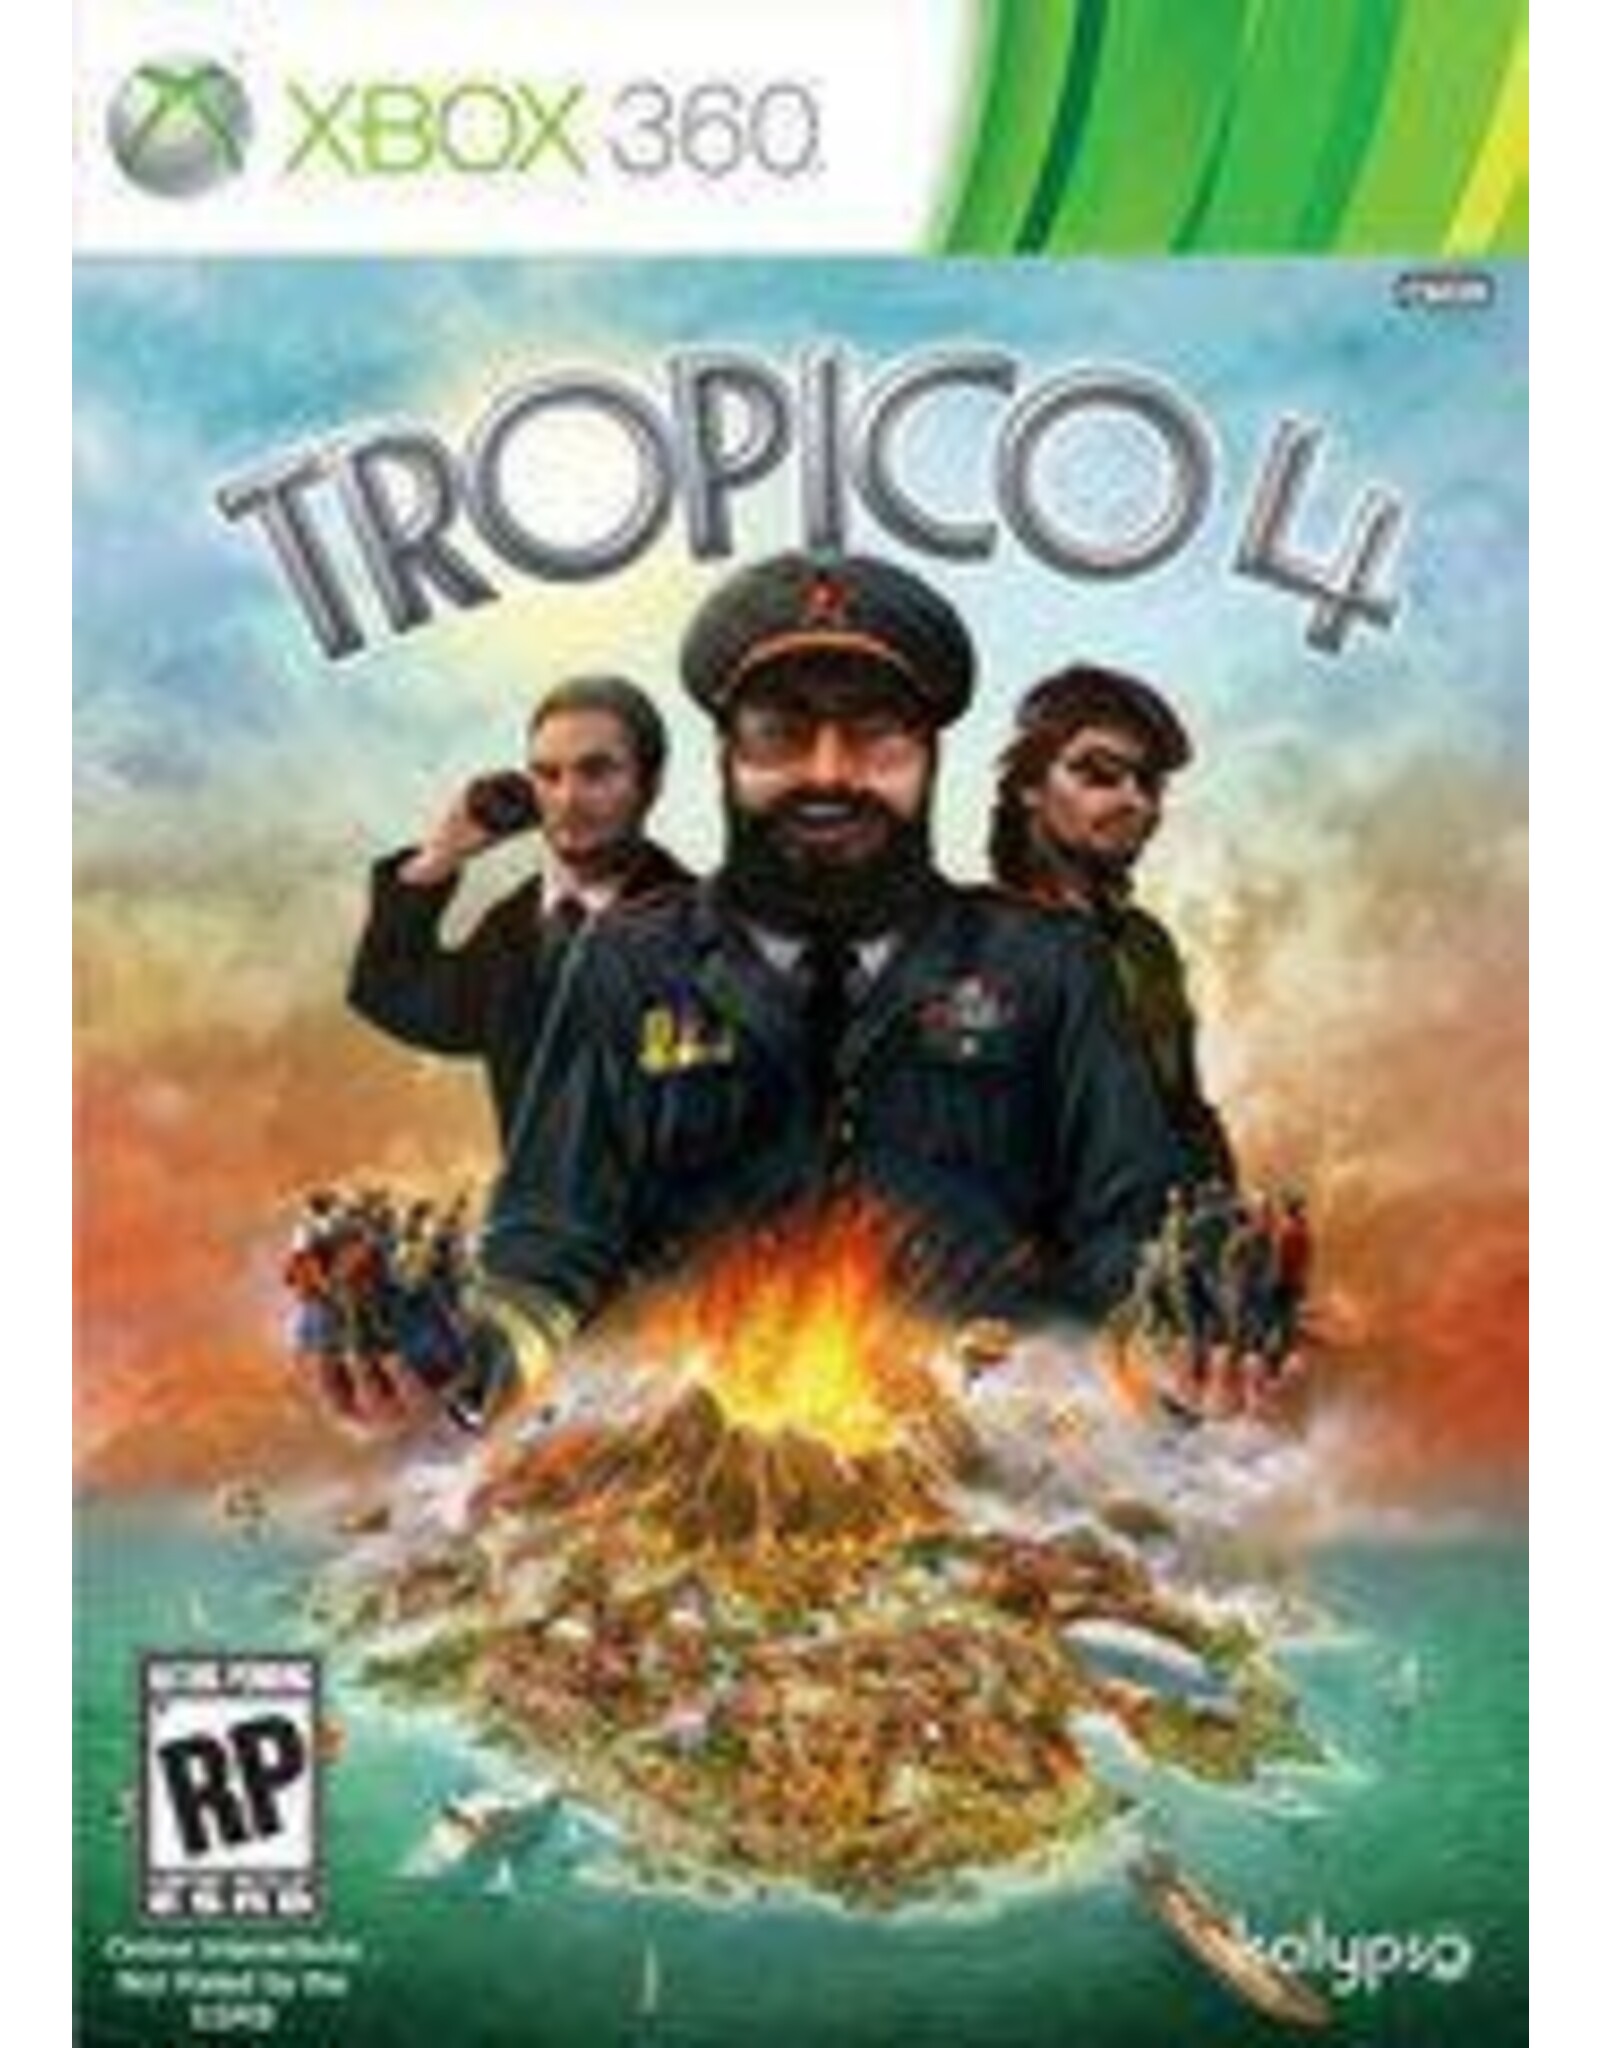 Xbox 360 Tropico 4 (CiB)